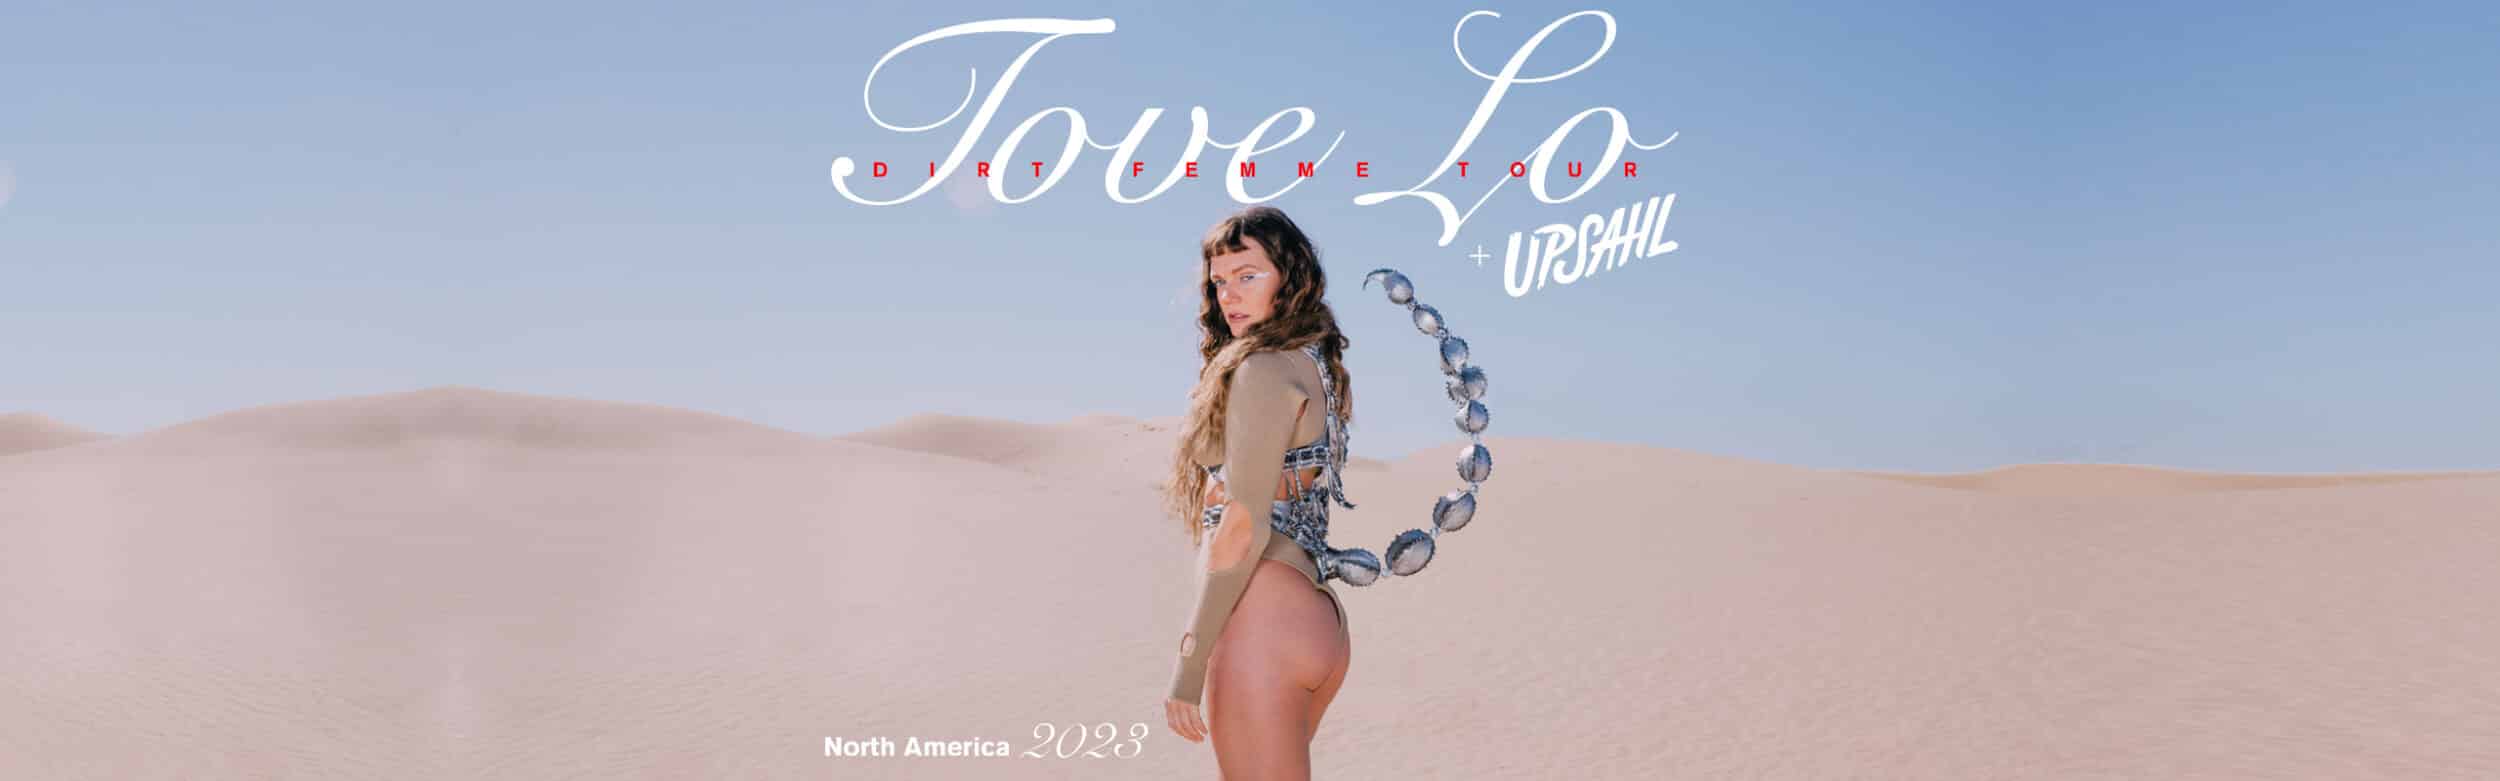 Tove Lo – Dirt Femme Tour